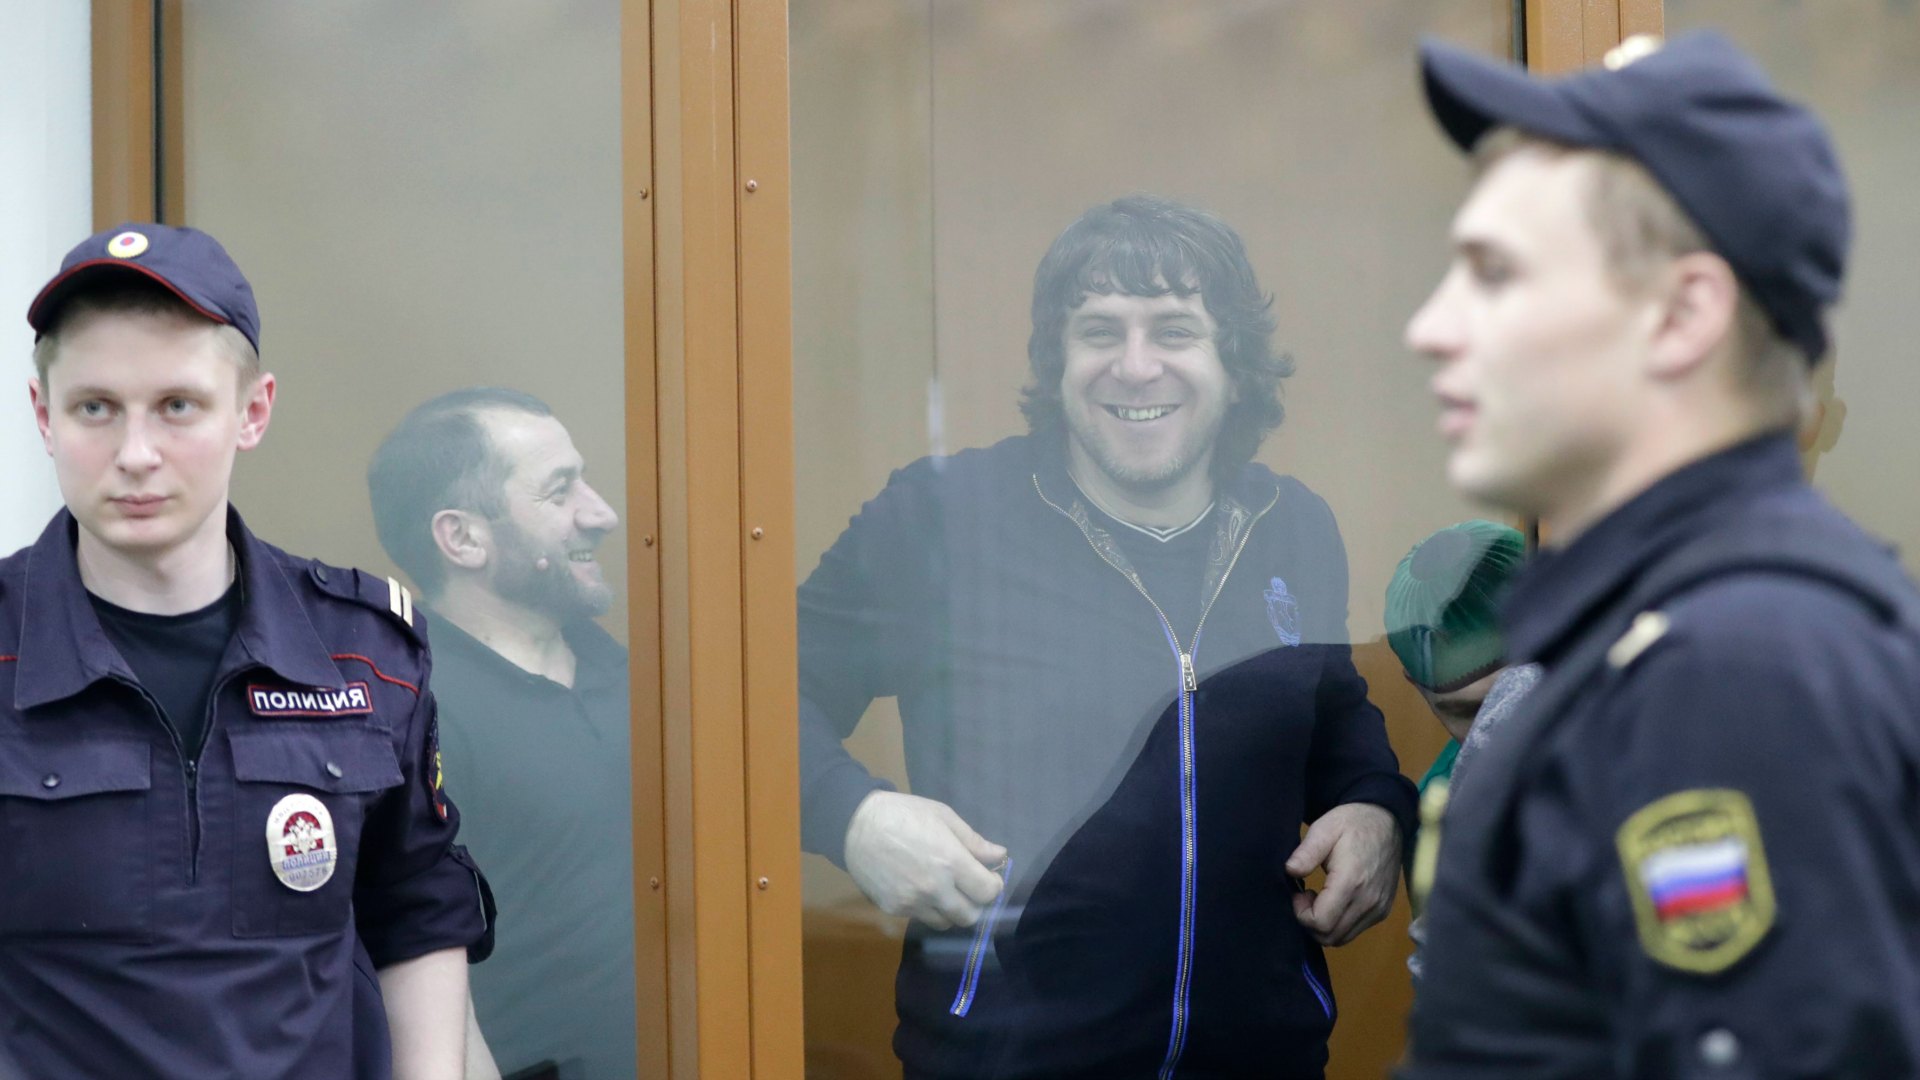 Condenado a 20 años de cárcel el autor material del asesinato del opositor Nemtsov